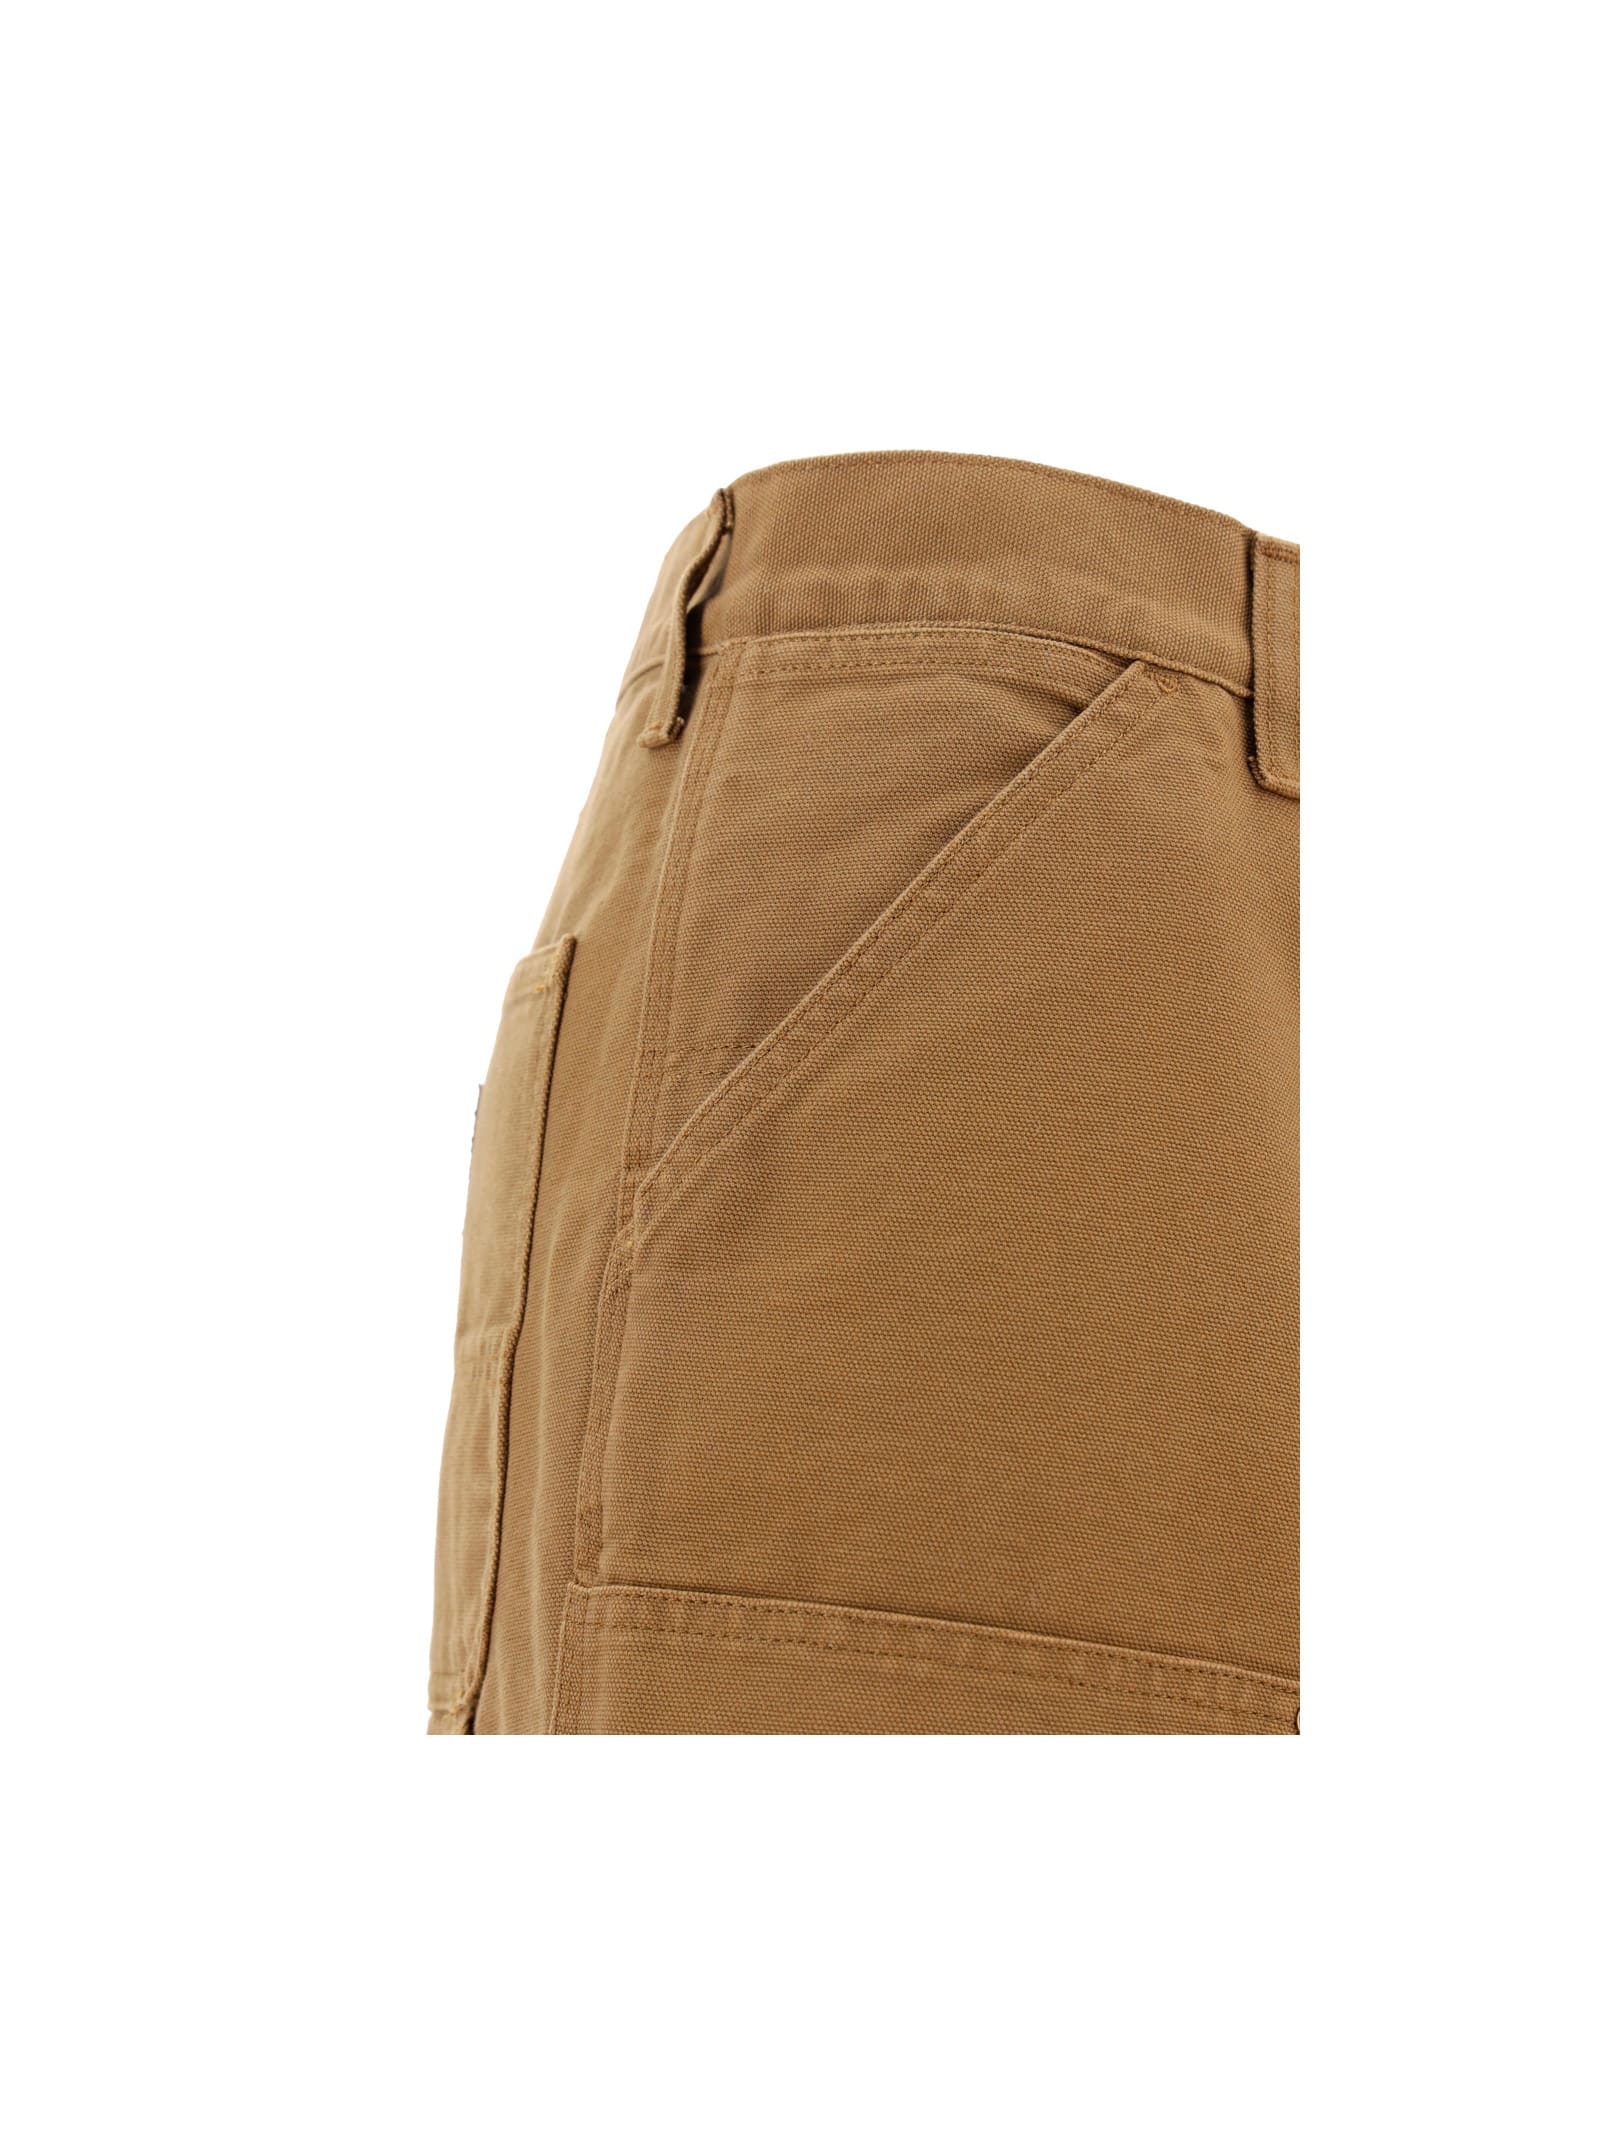 Shop Carhartt Double Knee Pants In Brown